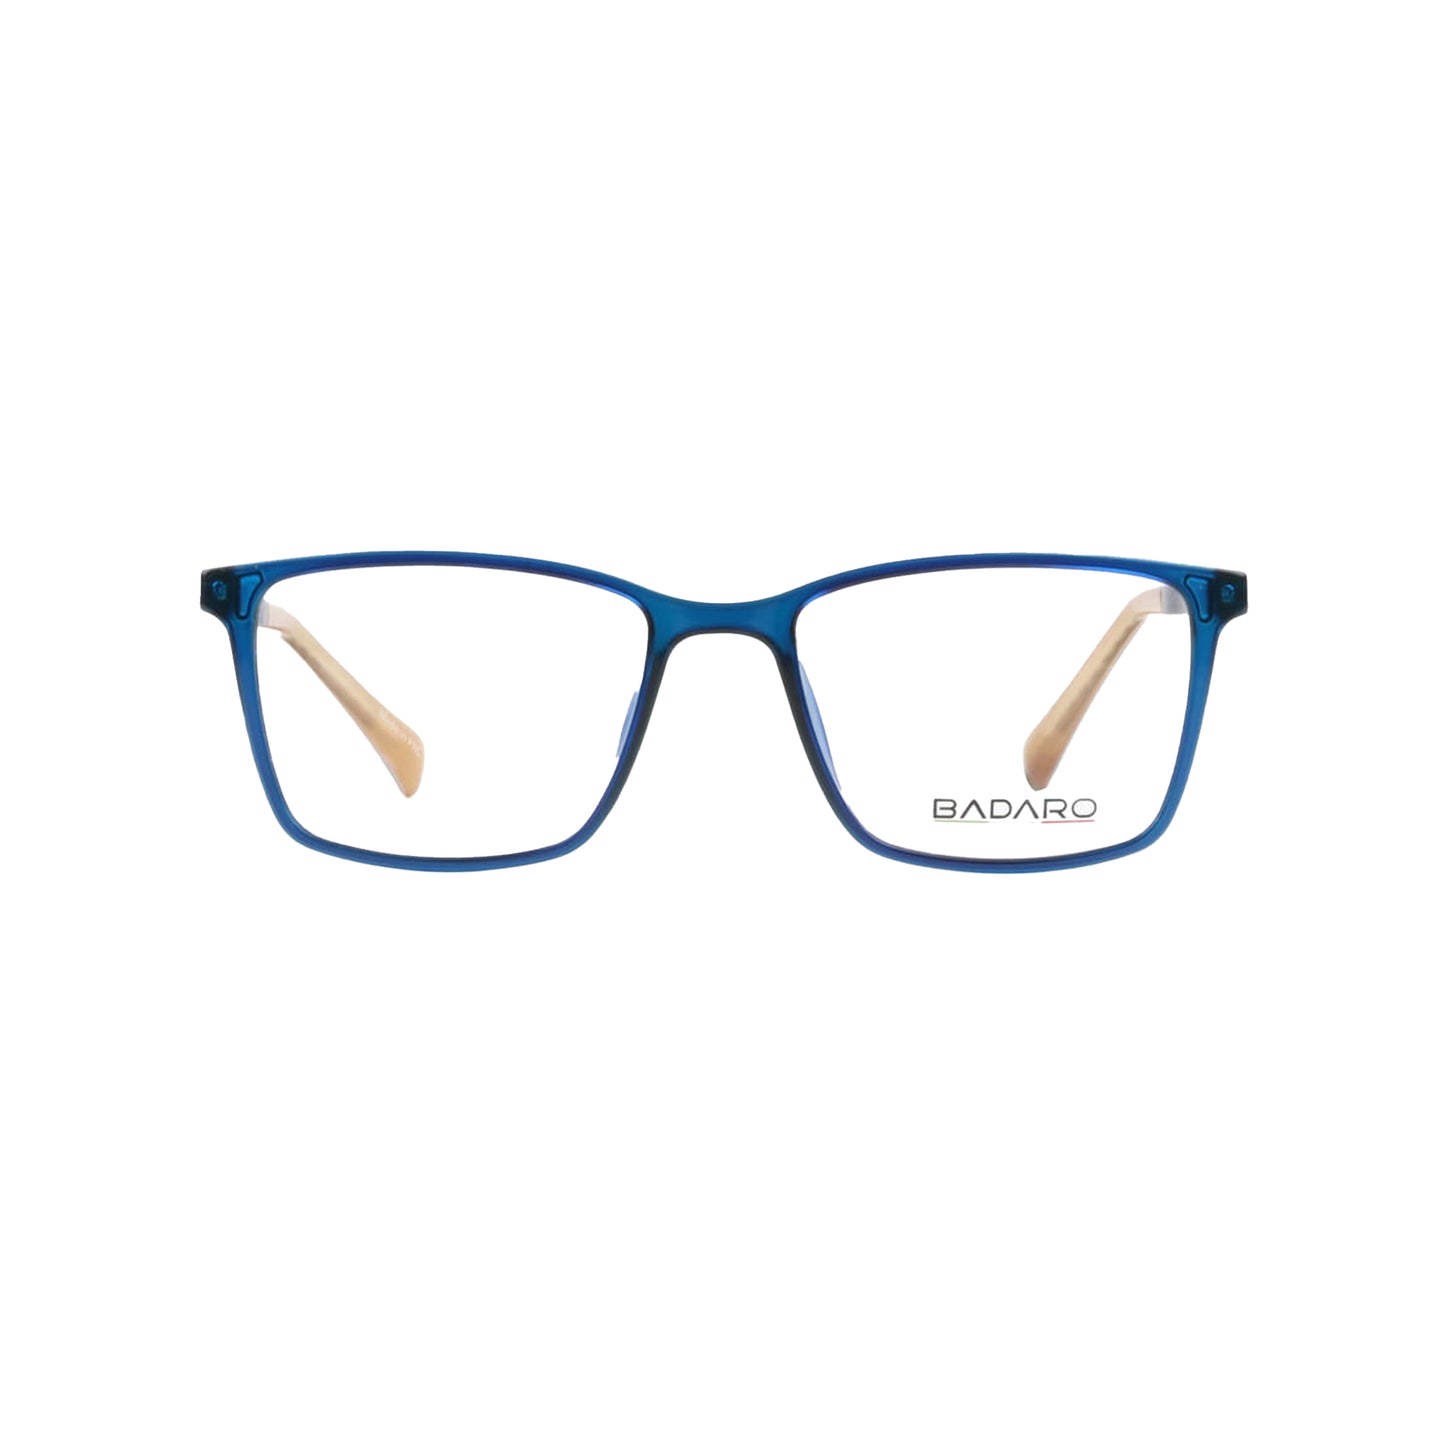 Badaro Unisex Square Blue Acetate Full Rim Eyeglasses